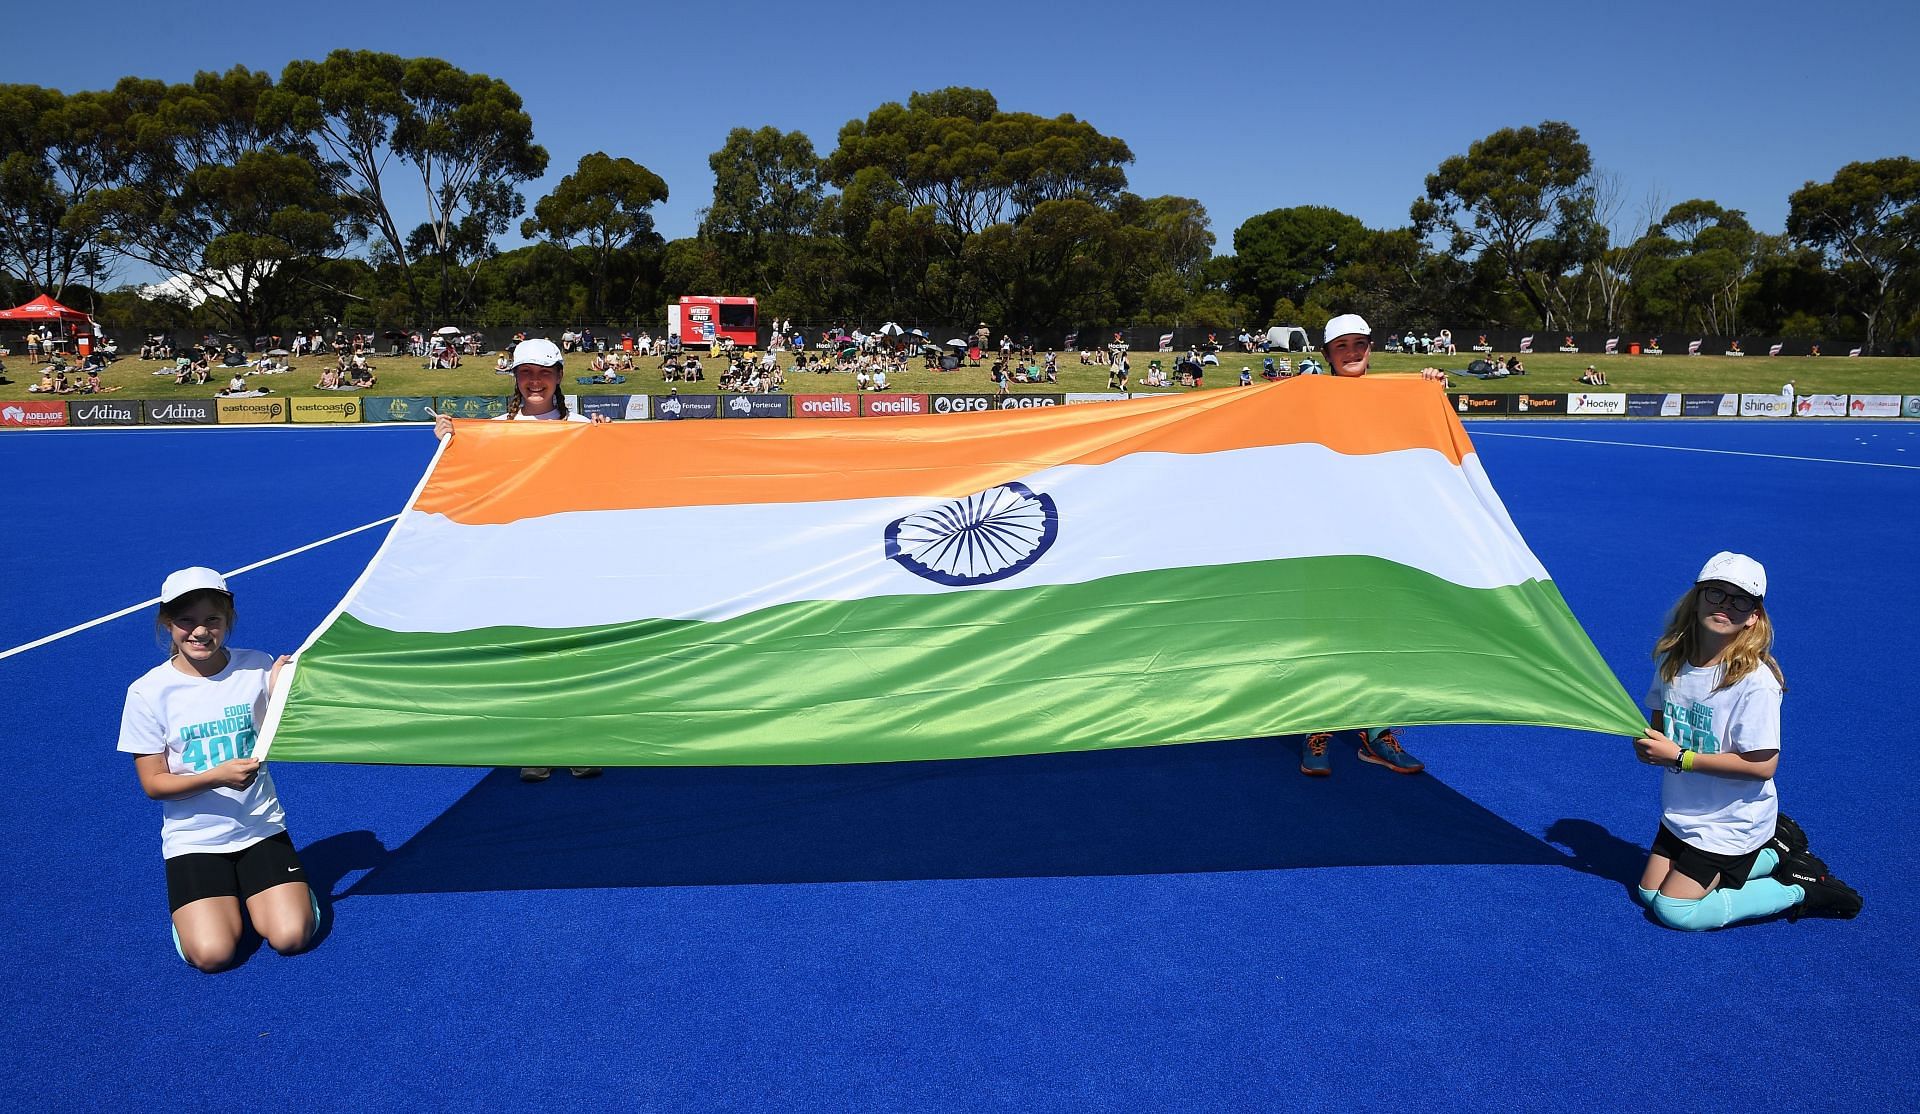 Australia v India International Hockey Test Series: Game 4